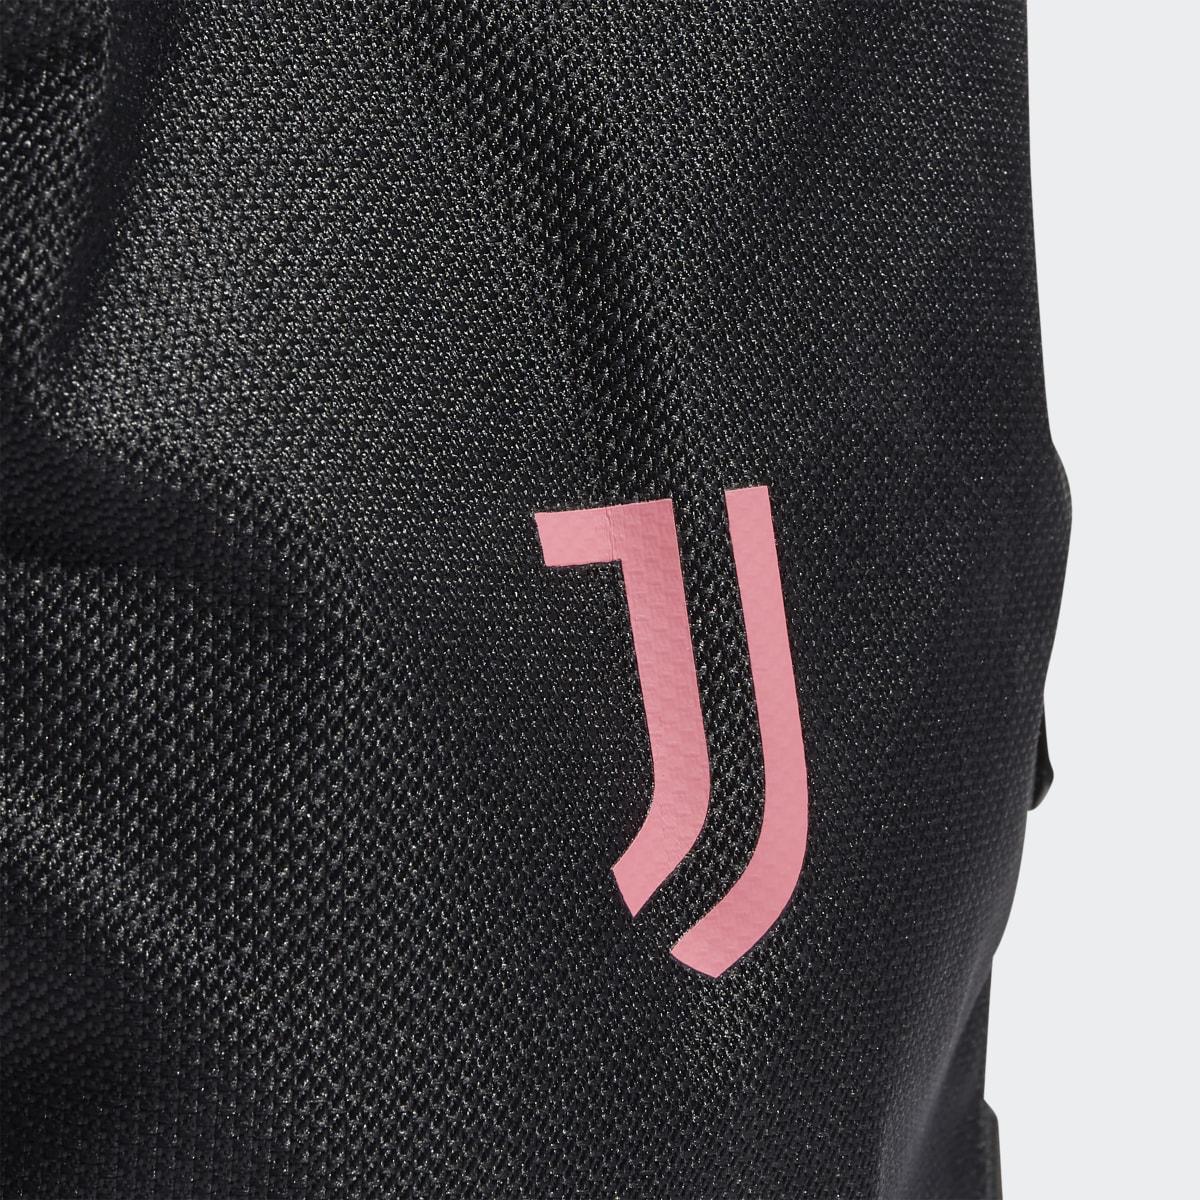 Adidas Juventus Travel Backpack. 6